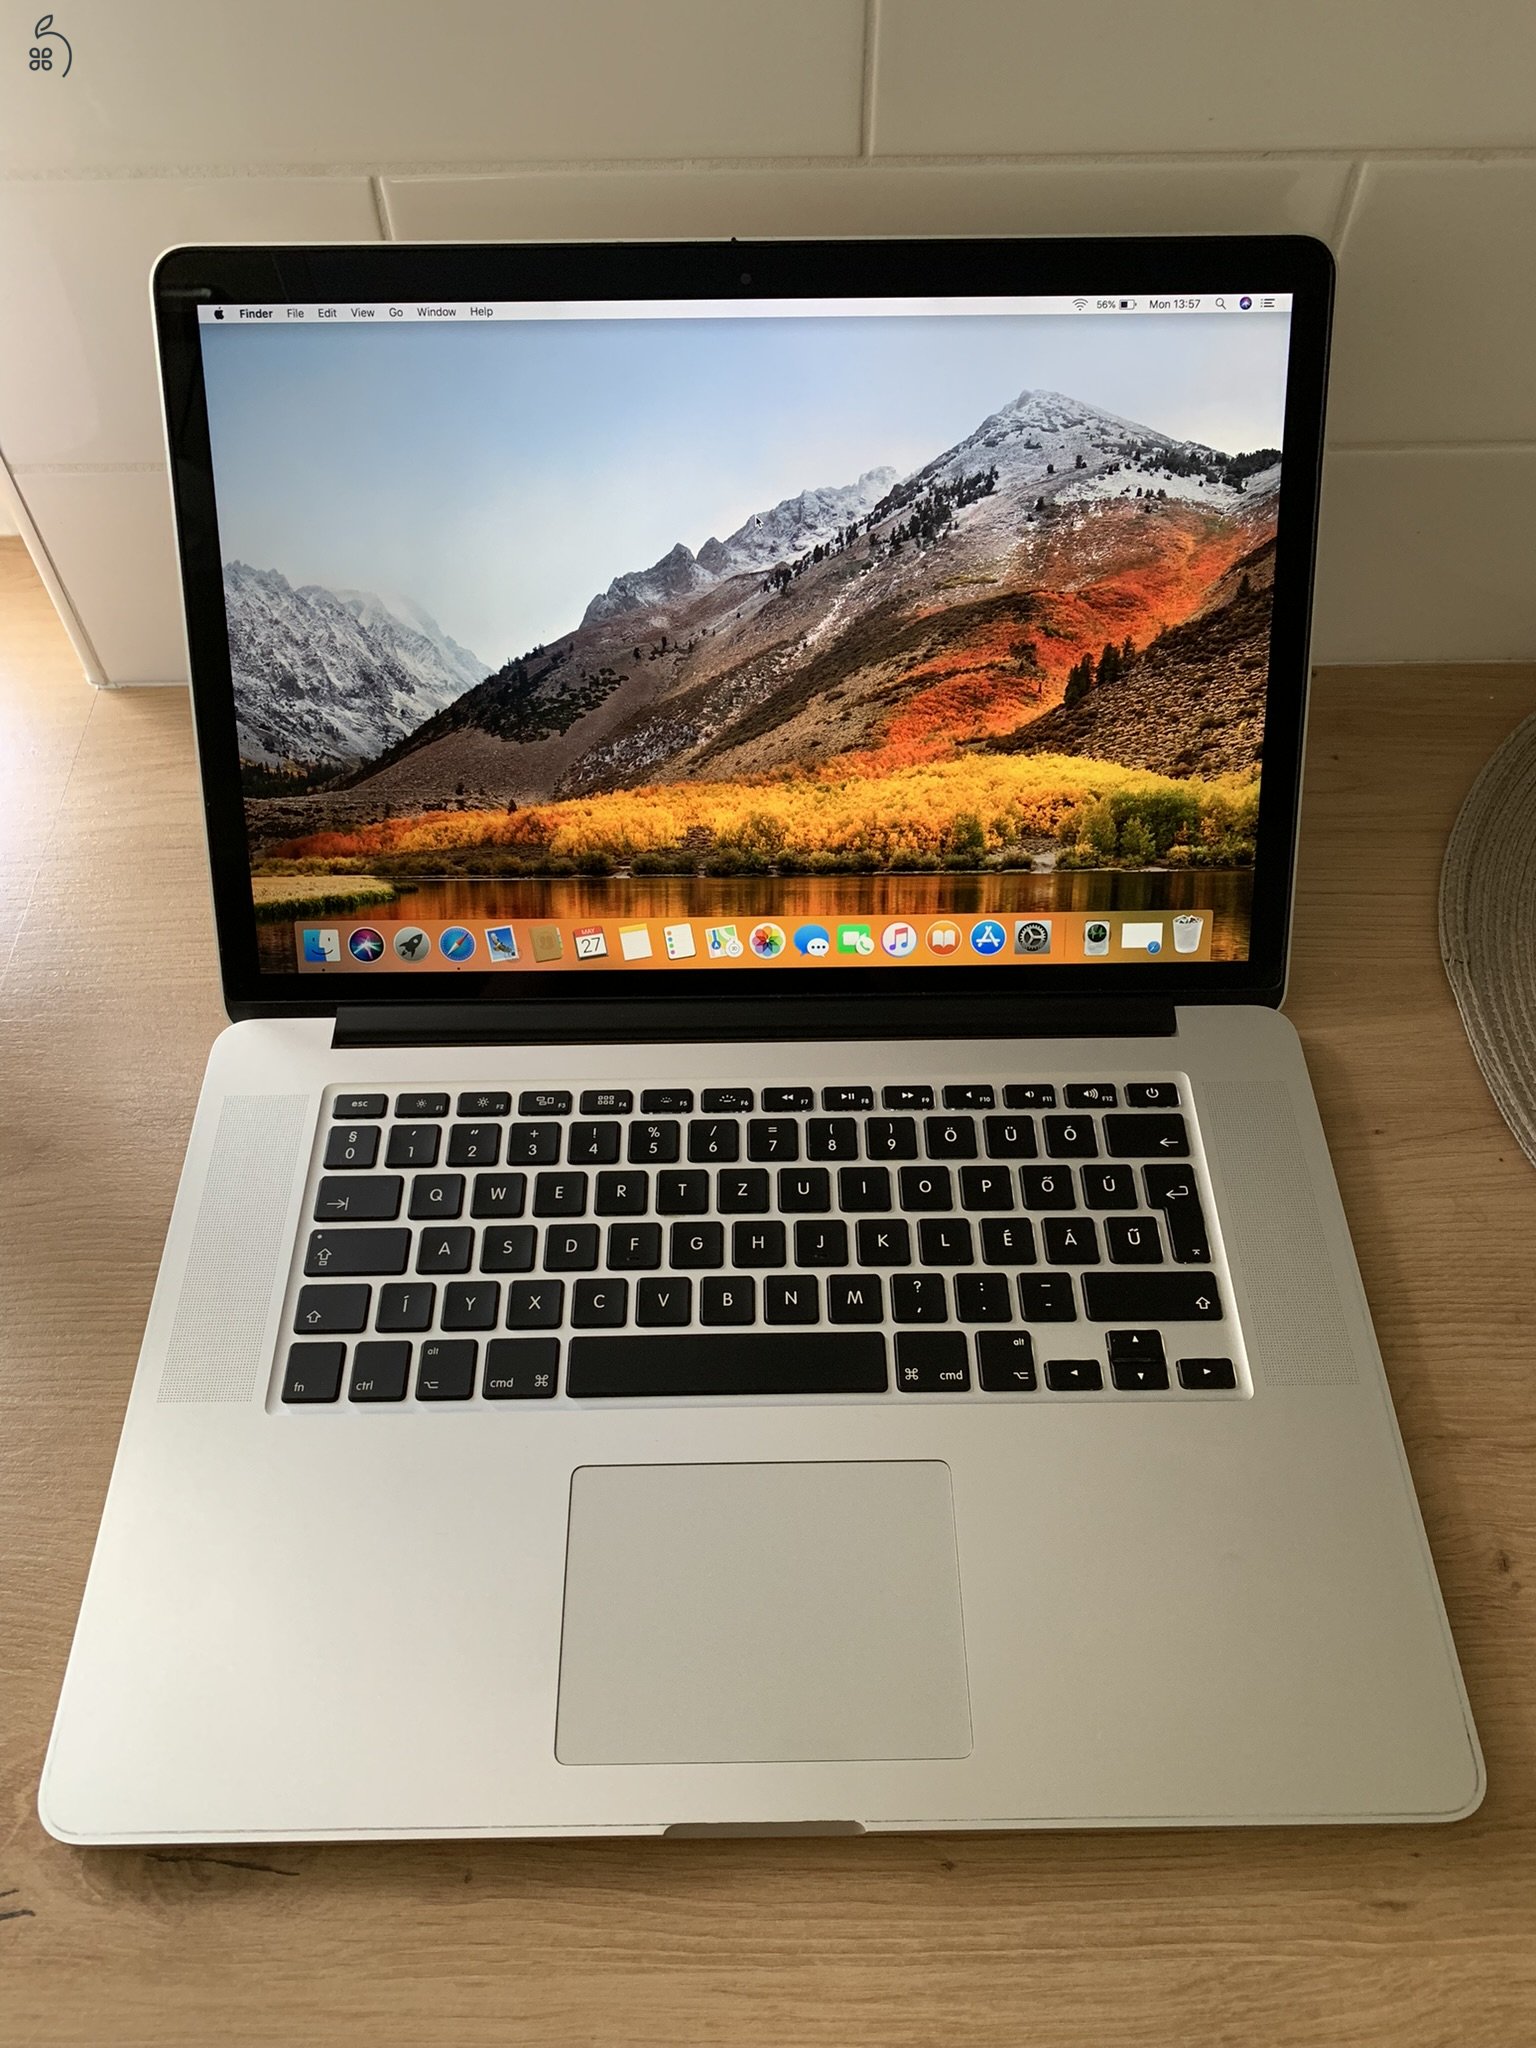 Macbook Pro A1398 (Mid 2012) 10,1